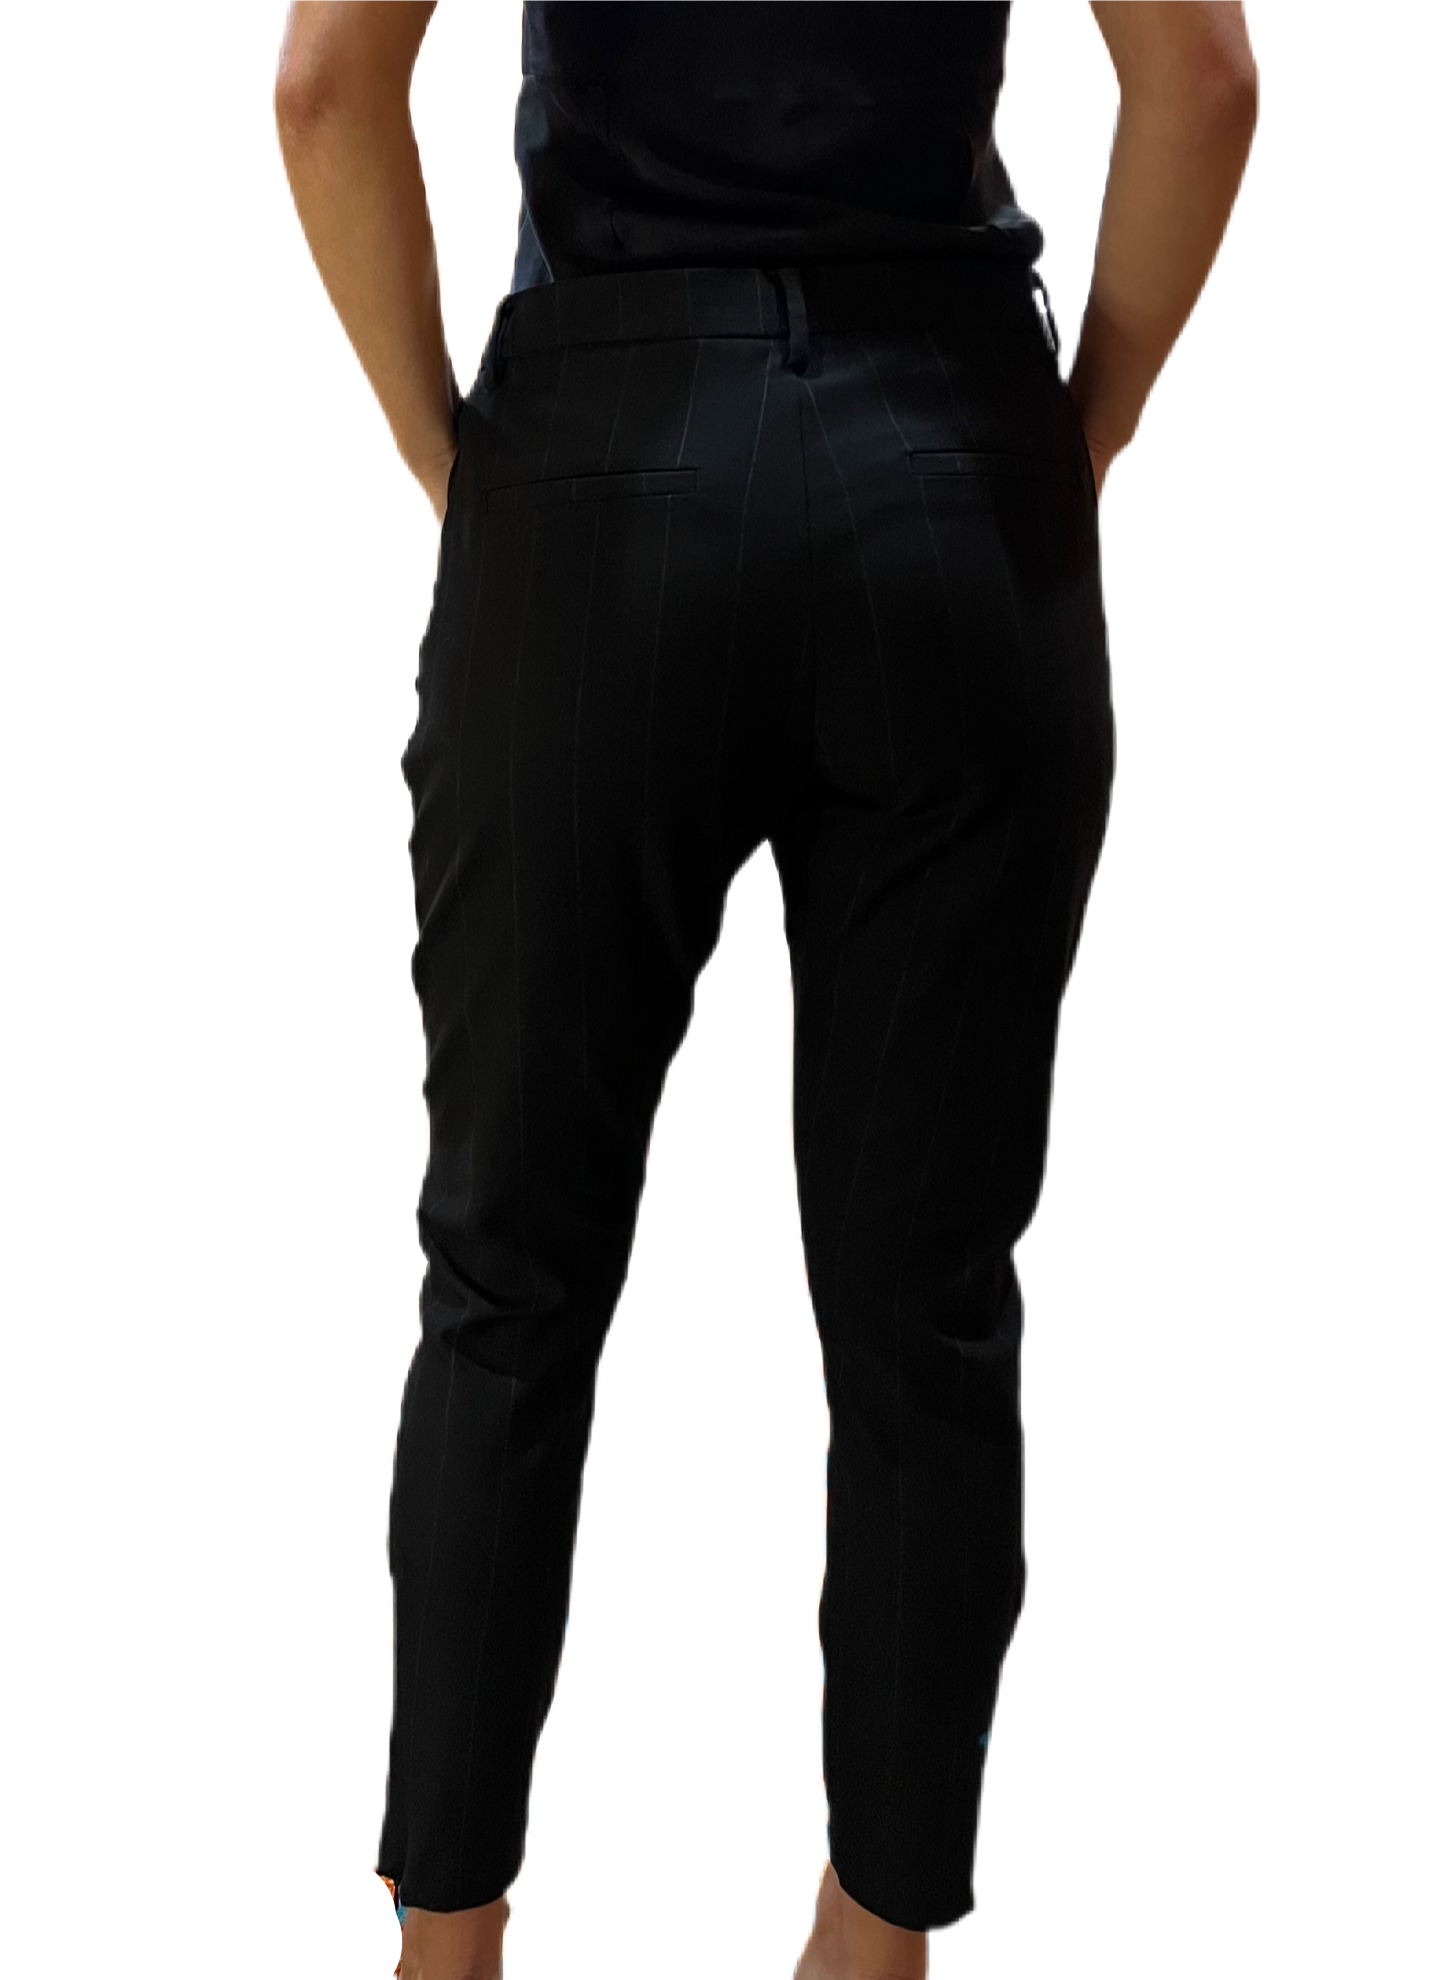 Five Units Black Pinstripe Pants. Size: 27